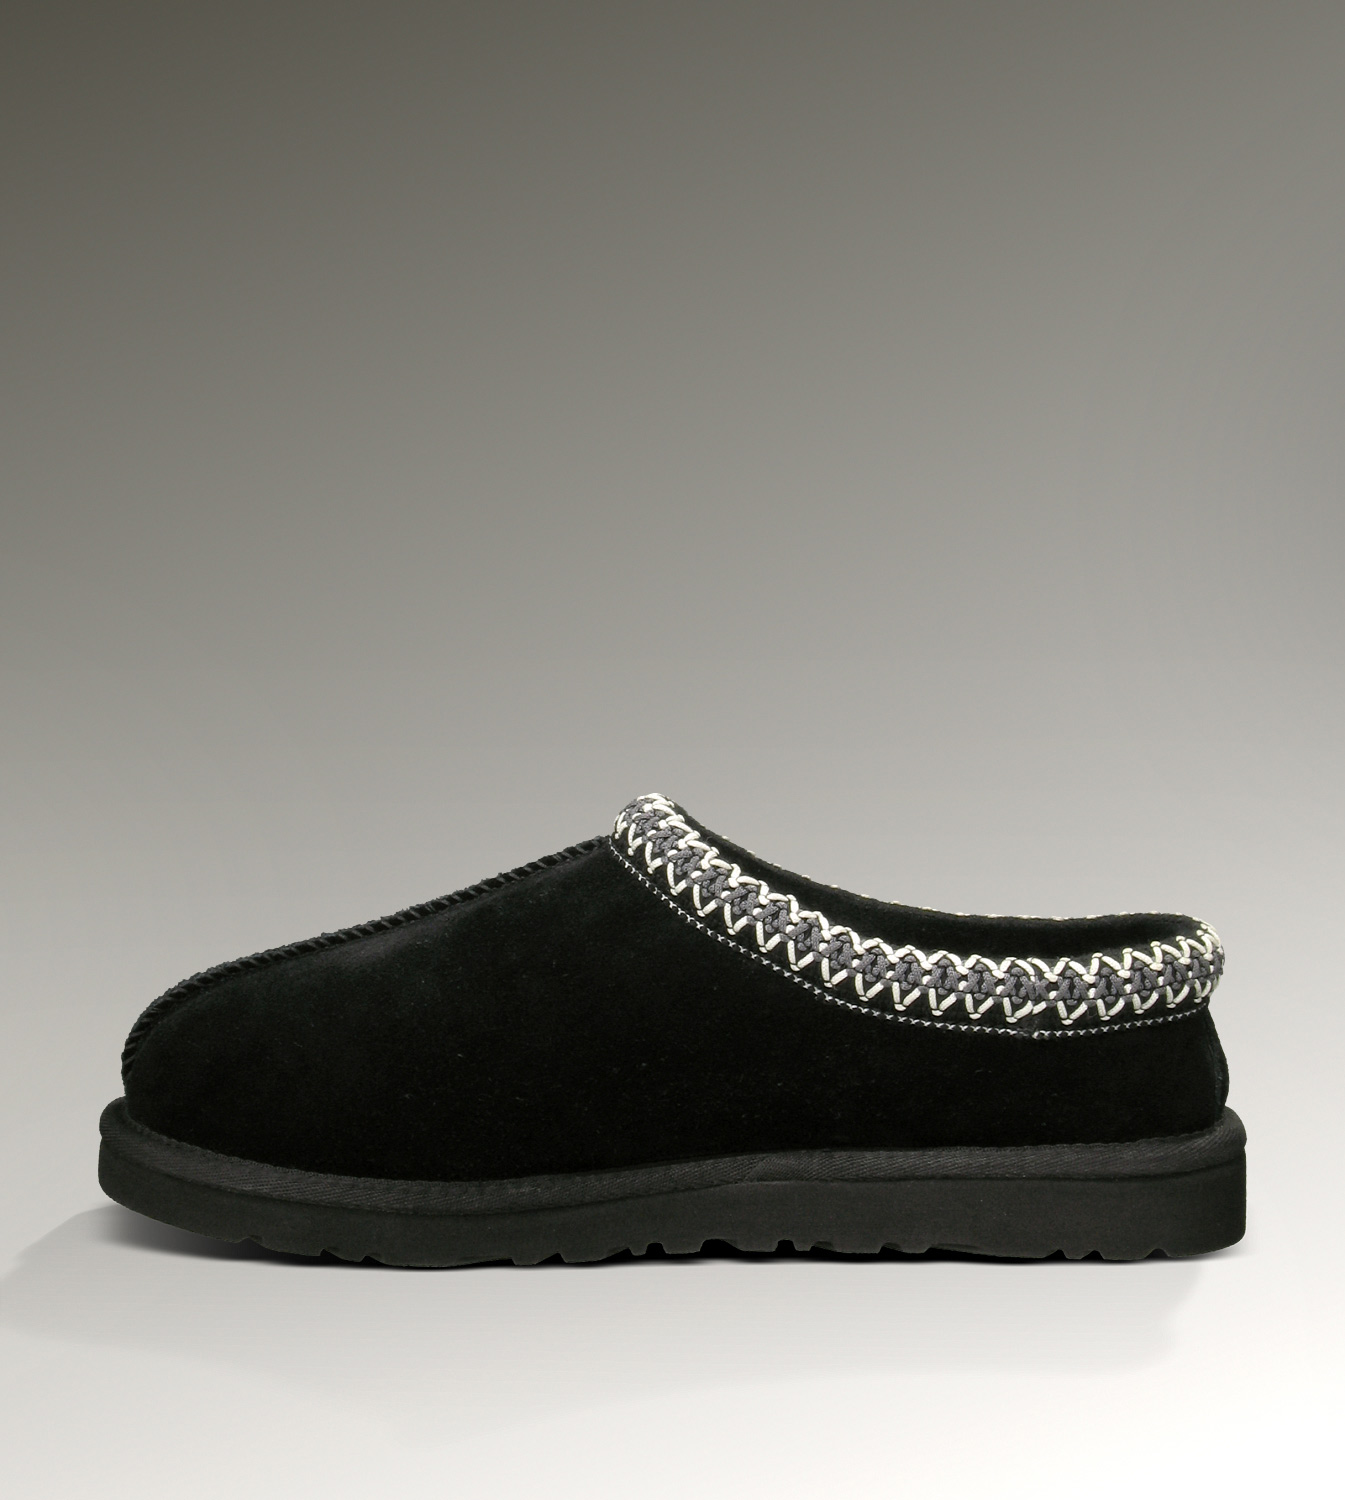 UGG Tasman 5955 Nero Pantofole